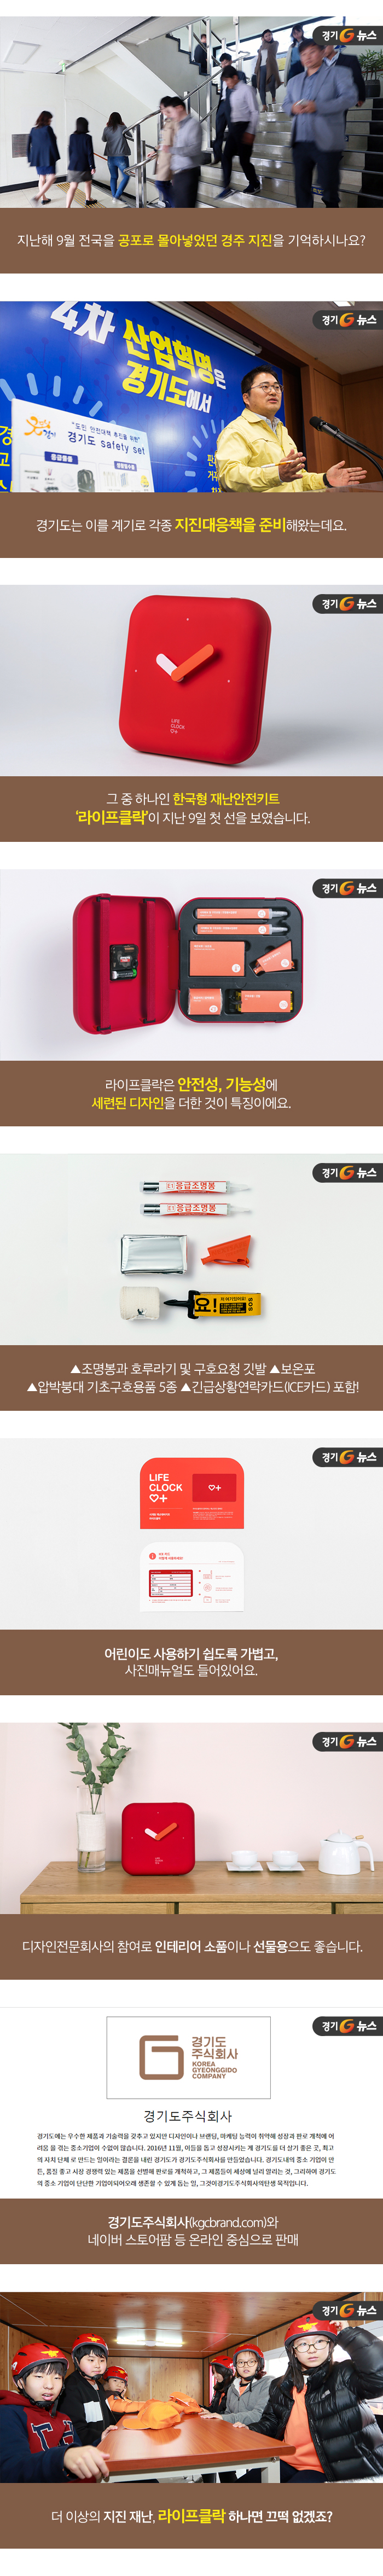 [카드G뉴스 50] 한국형 재난안전키트 ‘라이프클락’ 첫선